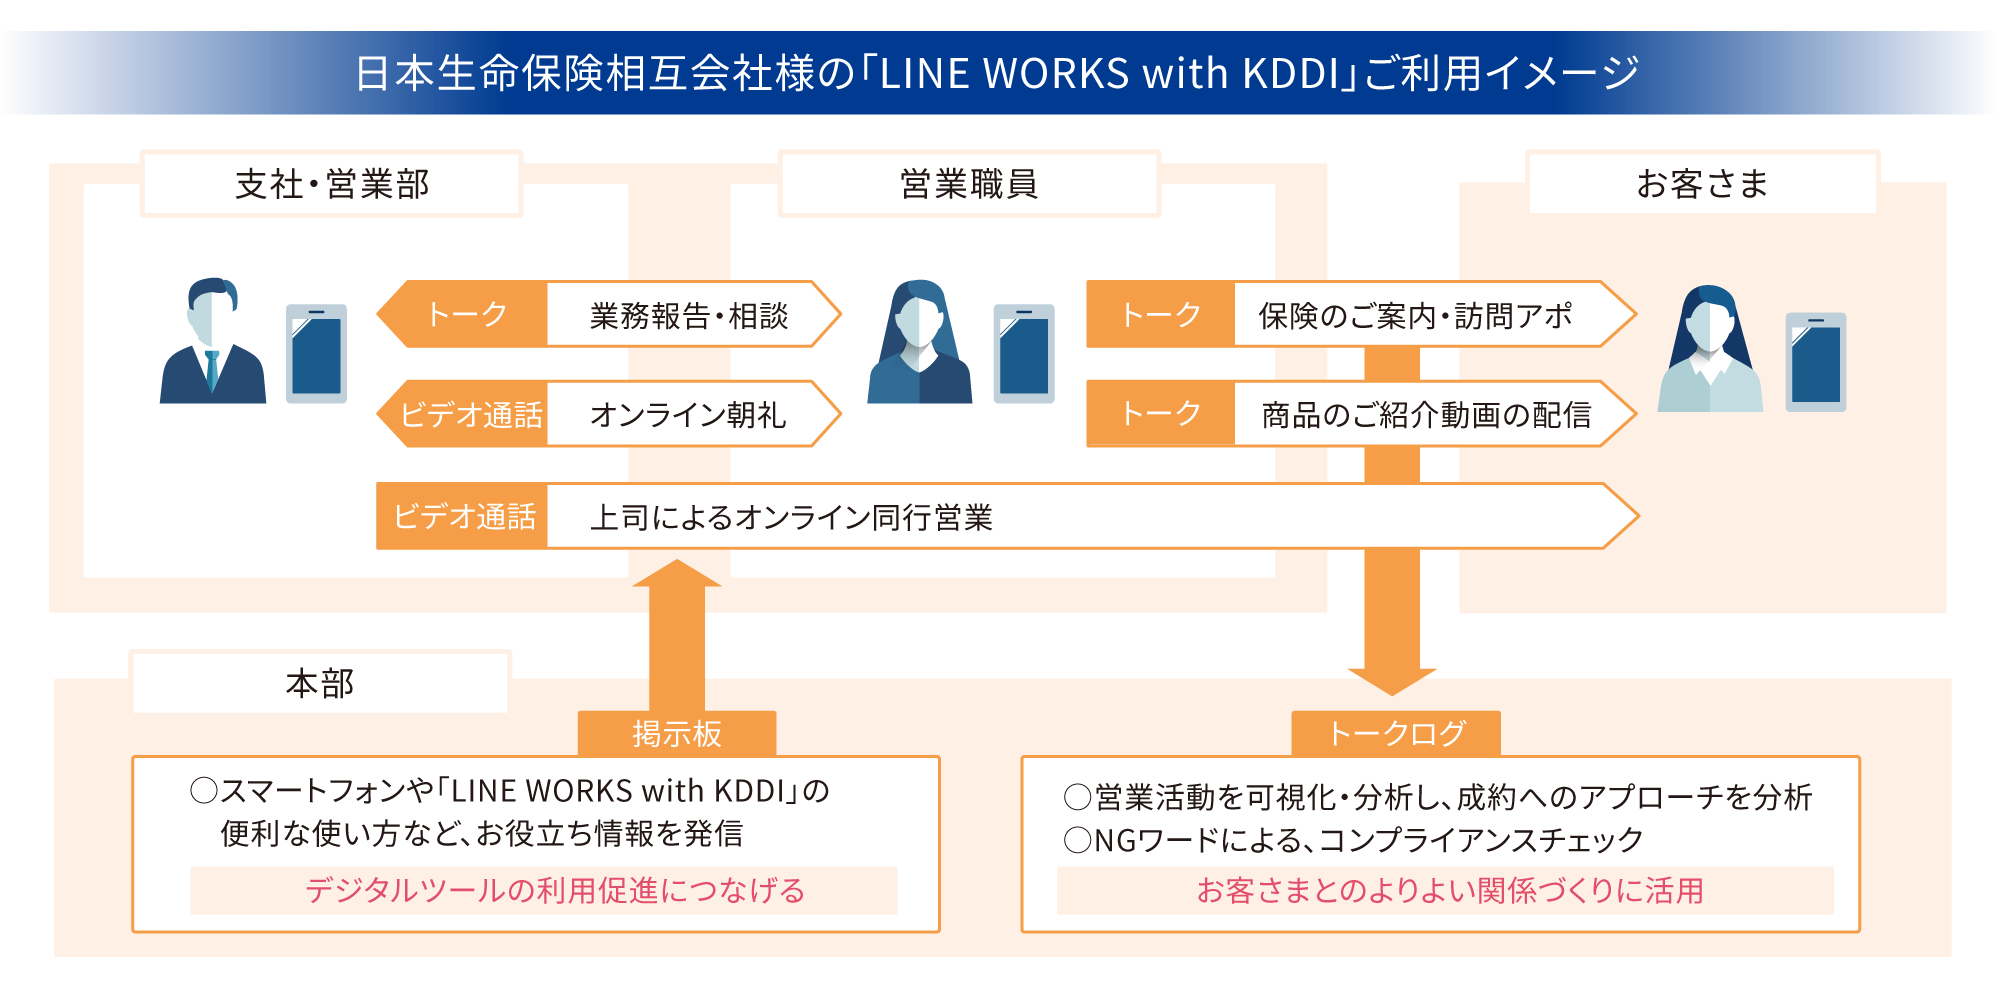 日本生命保険相互会社様の「LINE WORKS with KDDI」ご利用イメージ図 掲示板機能を活用し、社内へ便利なお役立ち情報を発信することで、デジタルツールの利用促進につなげる。お客様とのトーク履歴を分析し、よりよい関係づくりに活用。